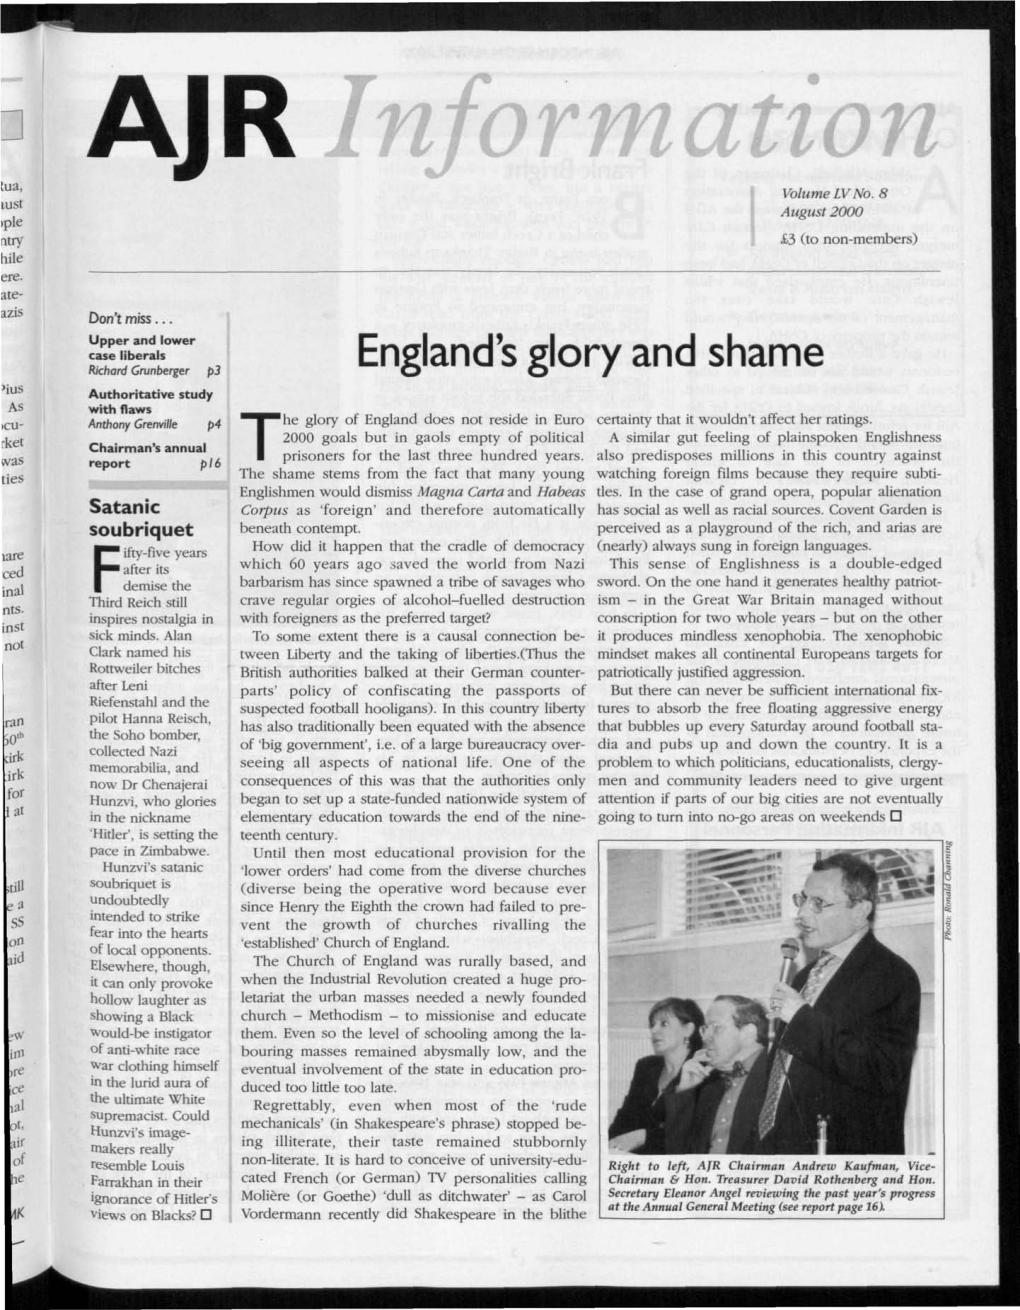 England's Glory and Shame